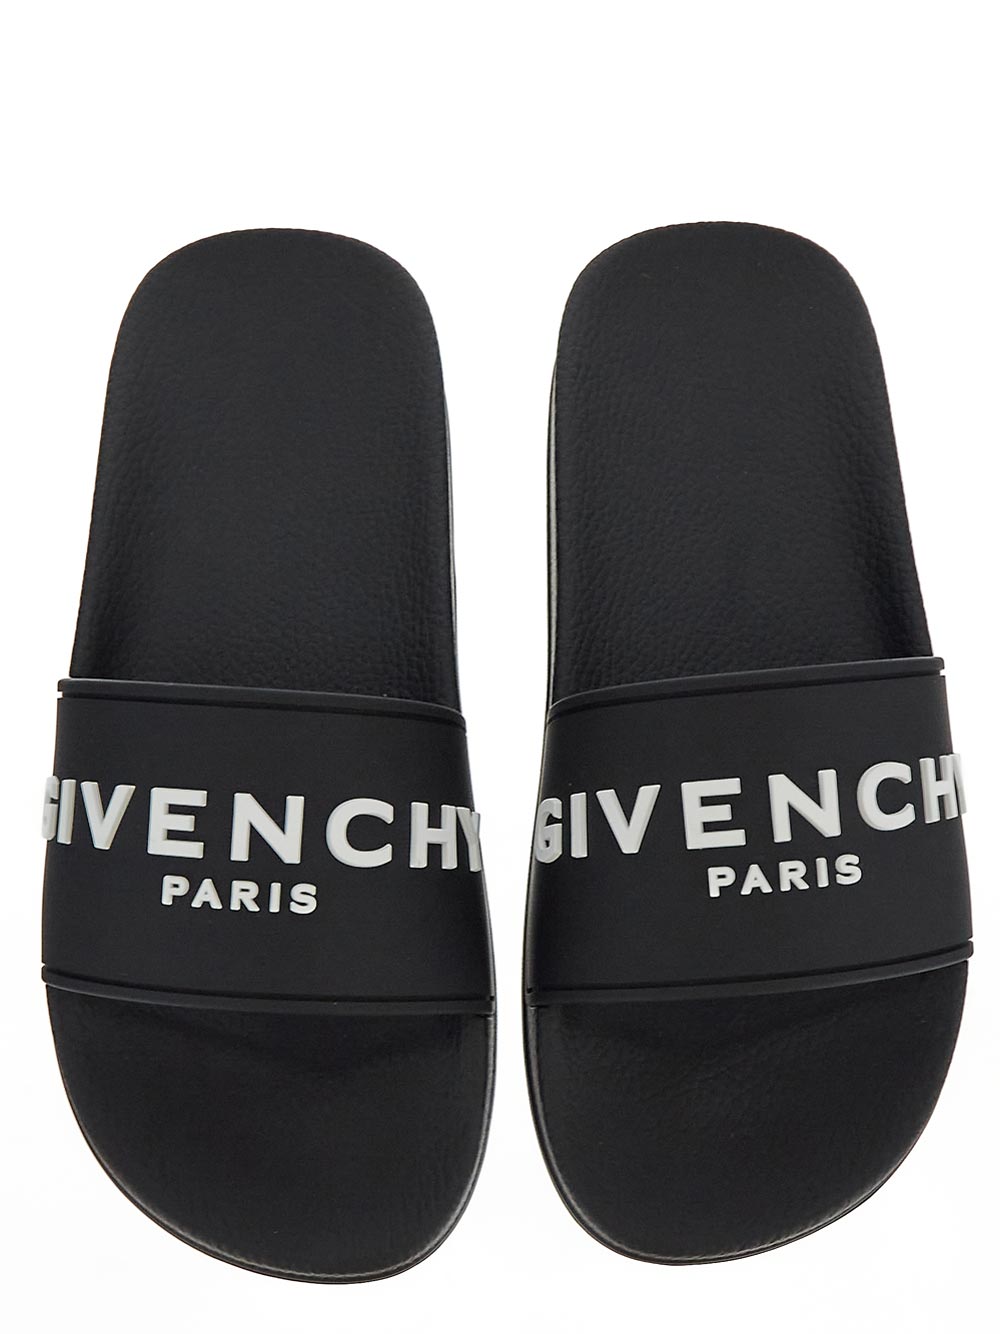 Givenchy Paris Flat Sandals